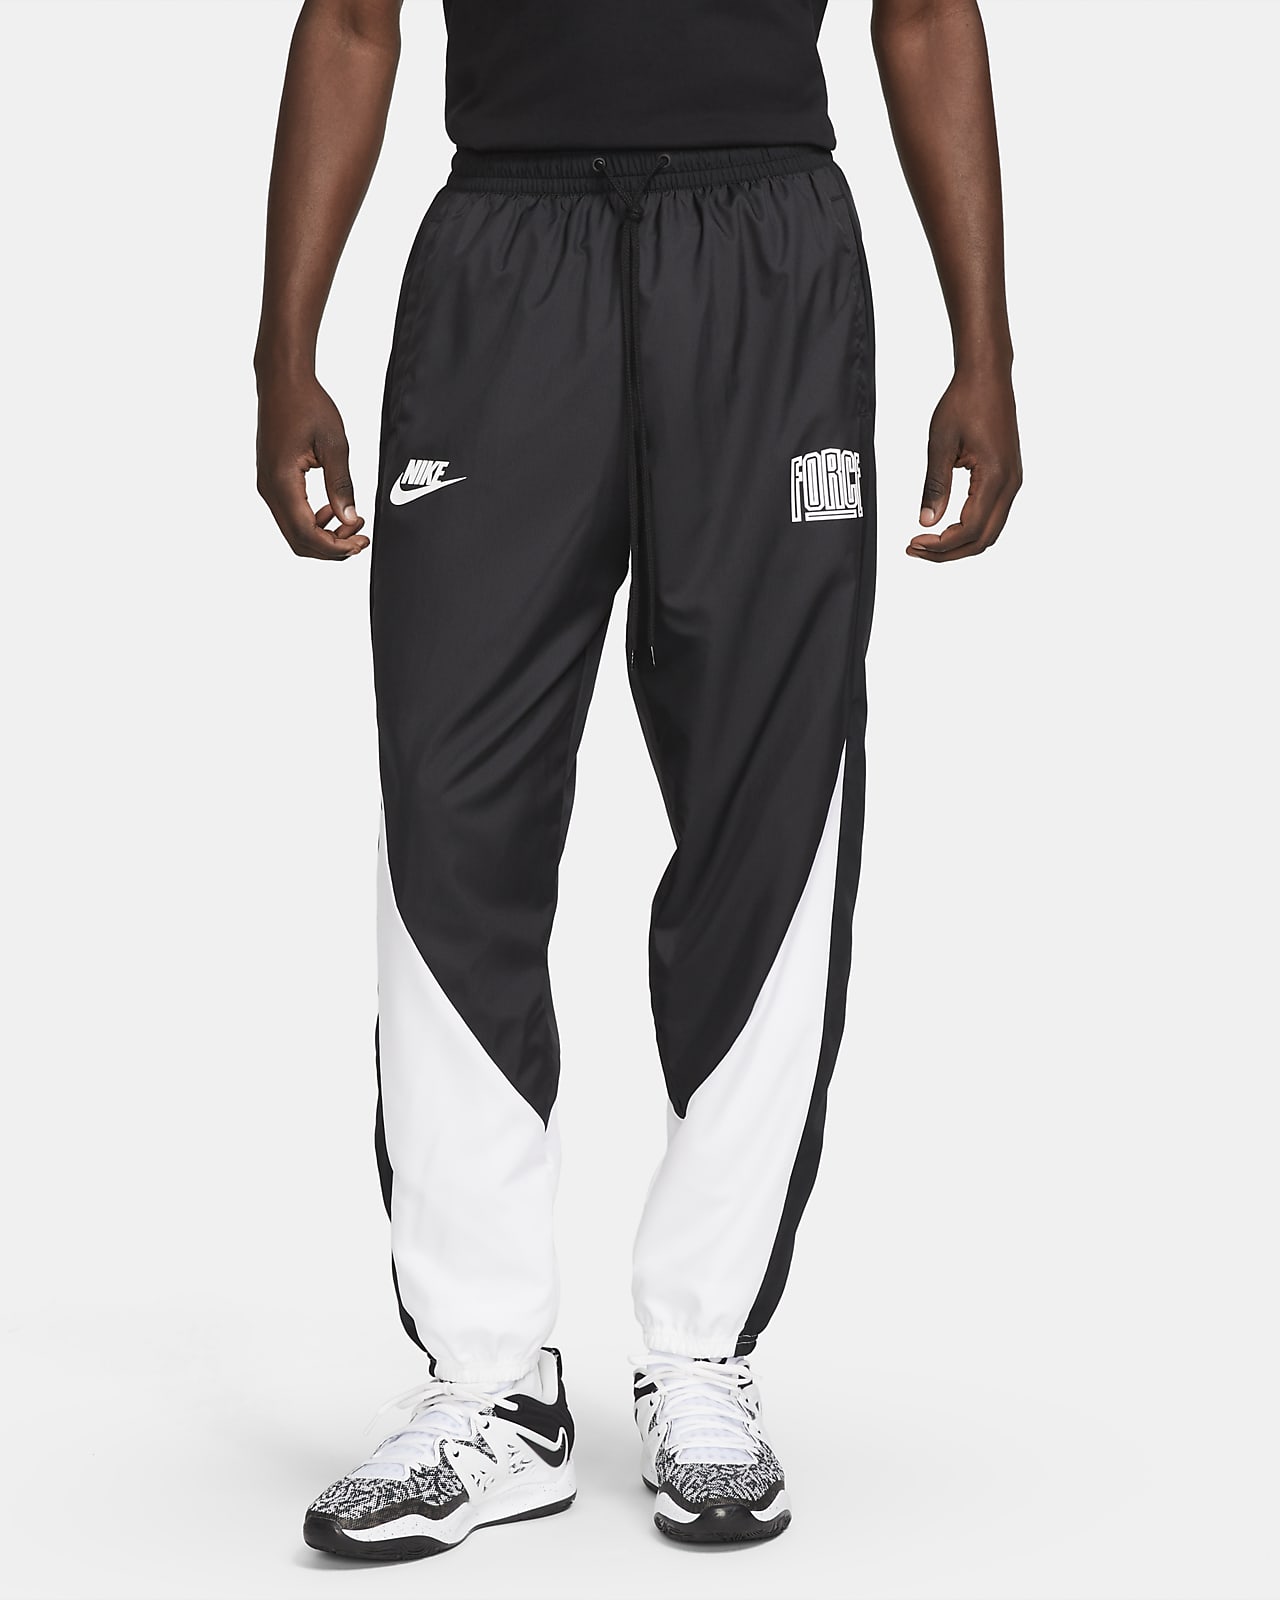 Pantaloni da basket Nike Starting 5 – Uomo